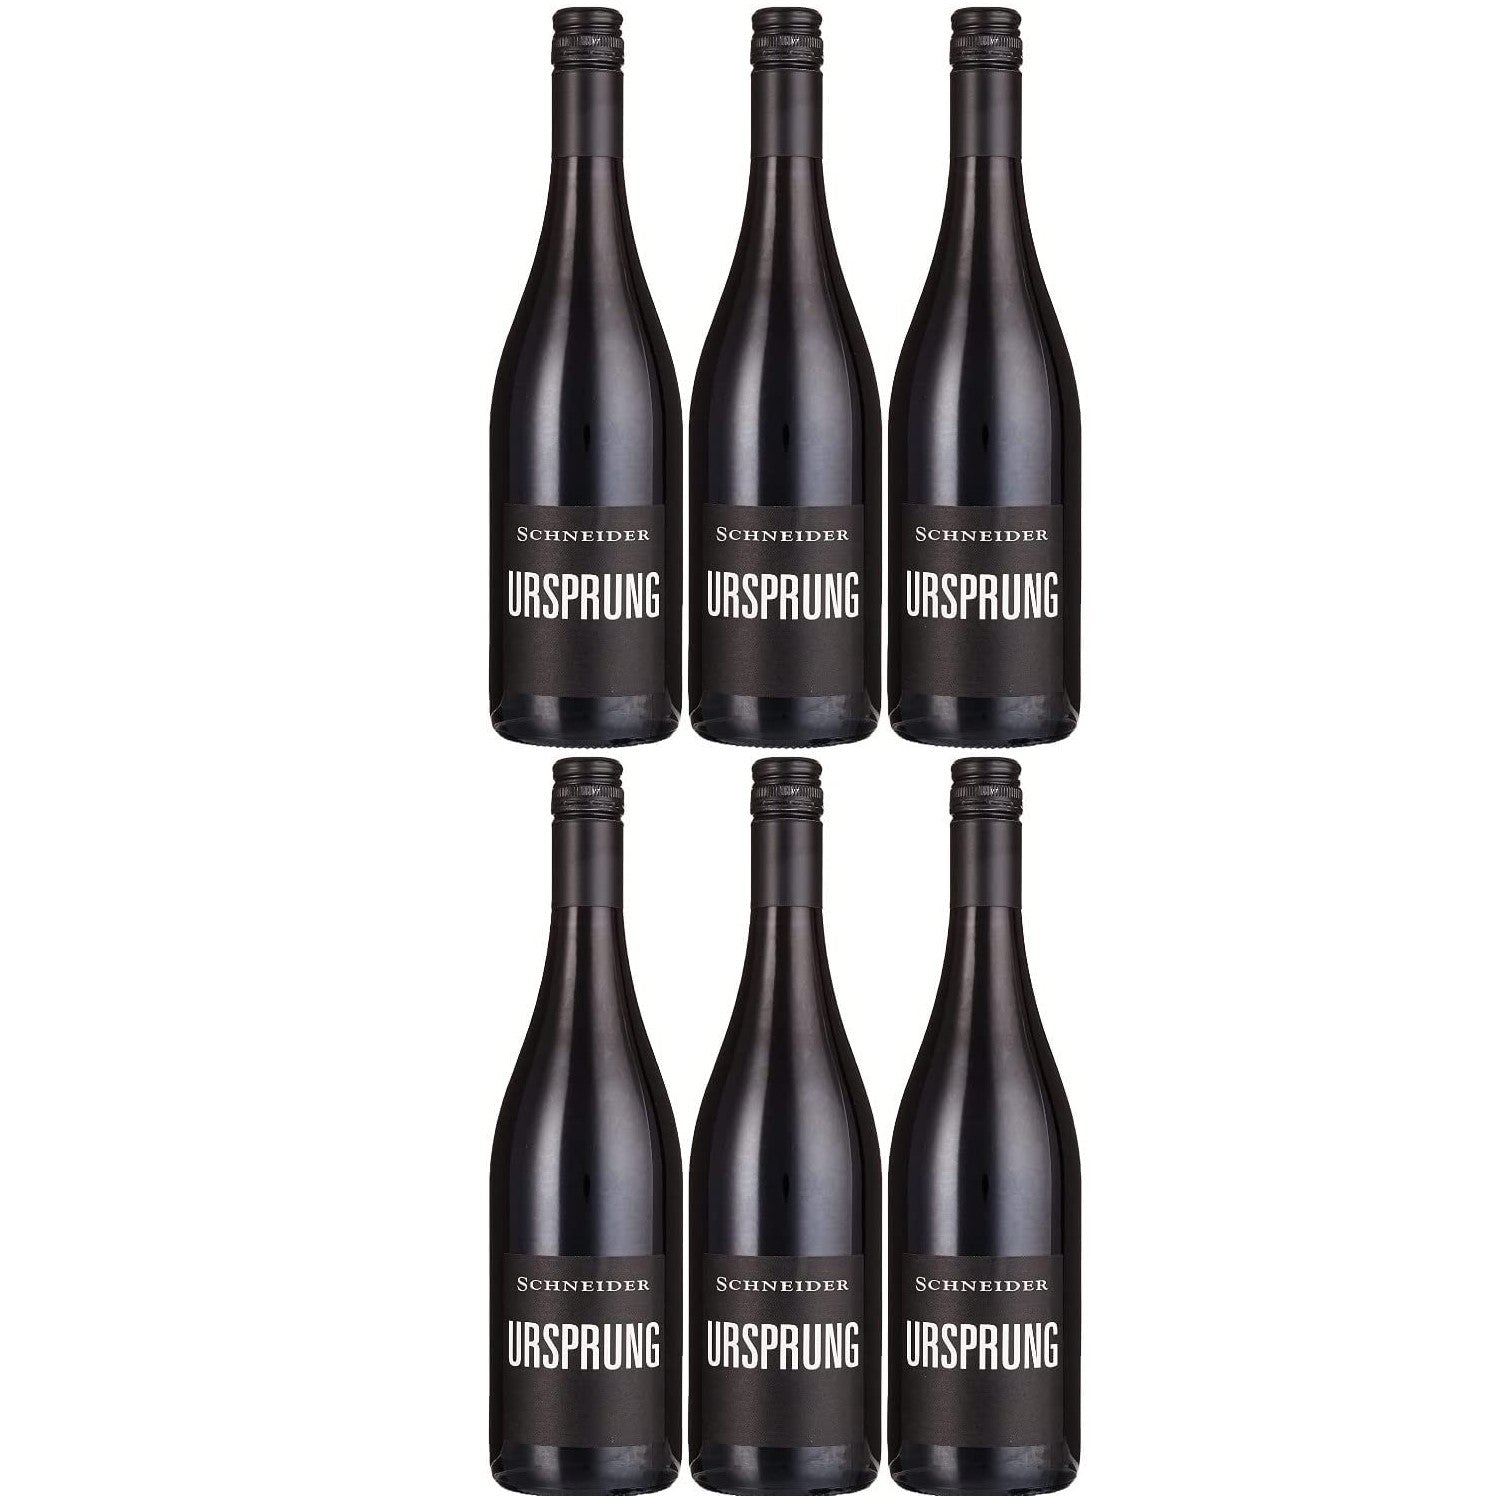 Markus Schneider Ursprung Rotwein deutscher Wein trocken Pfalz (6 x 0.75l) - Versanel -